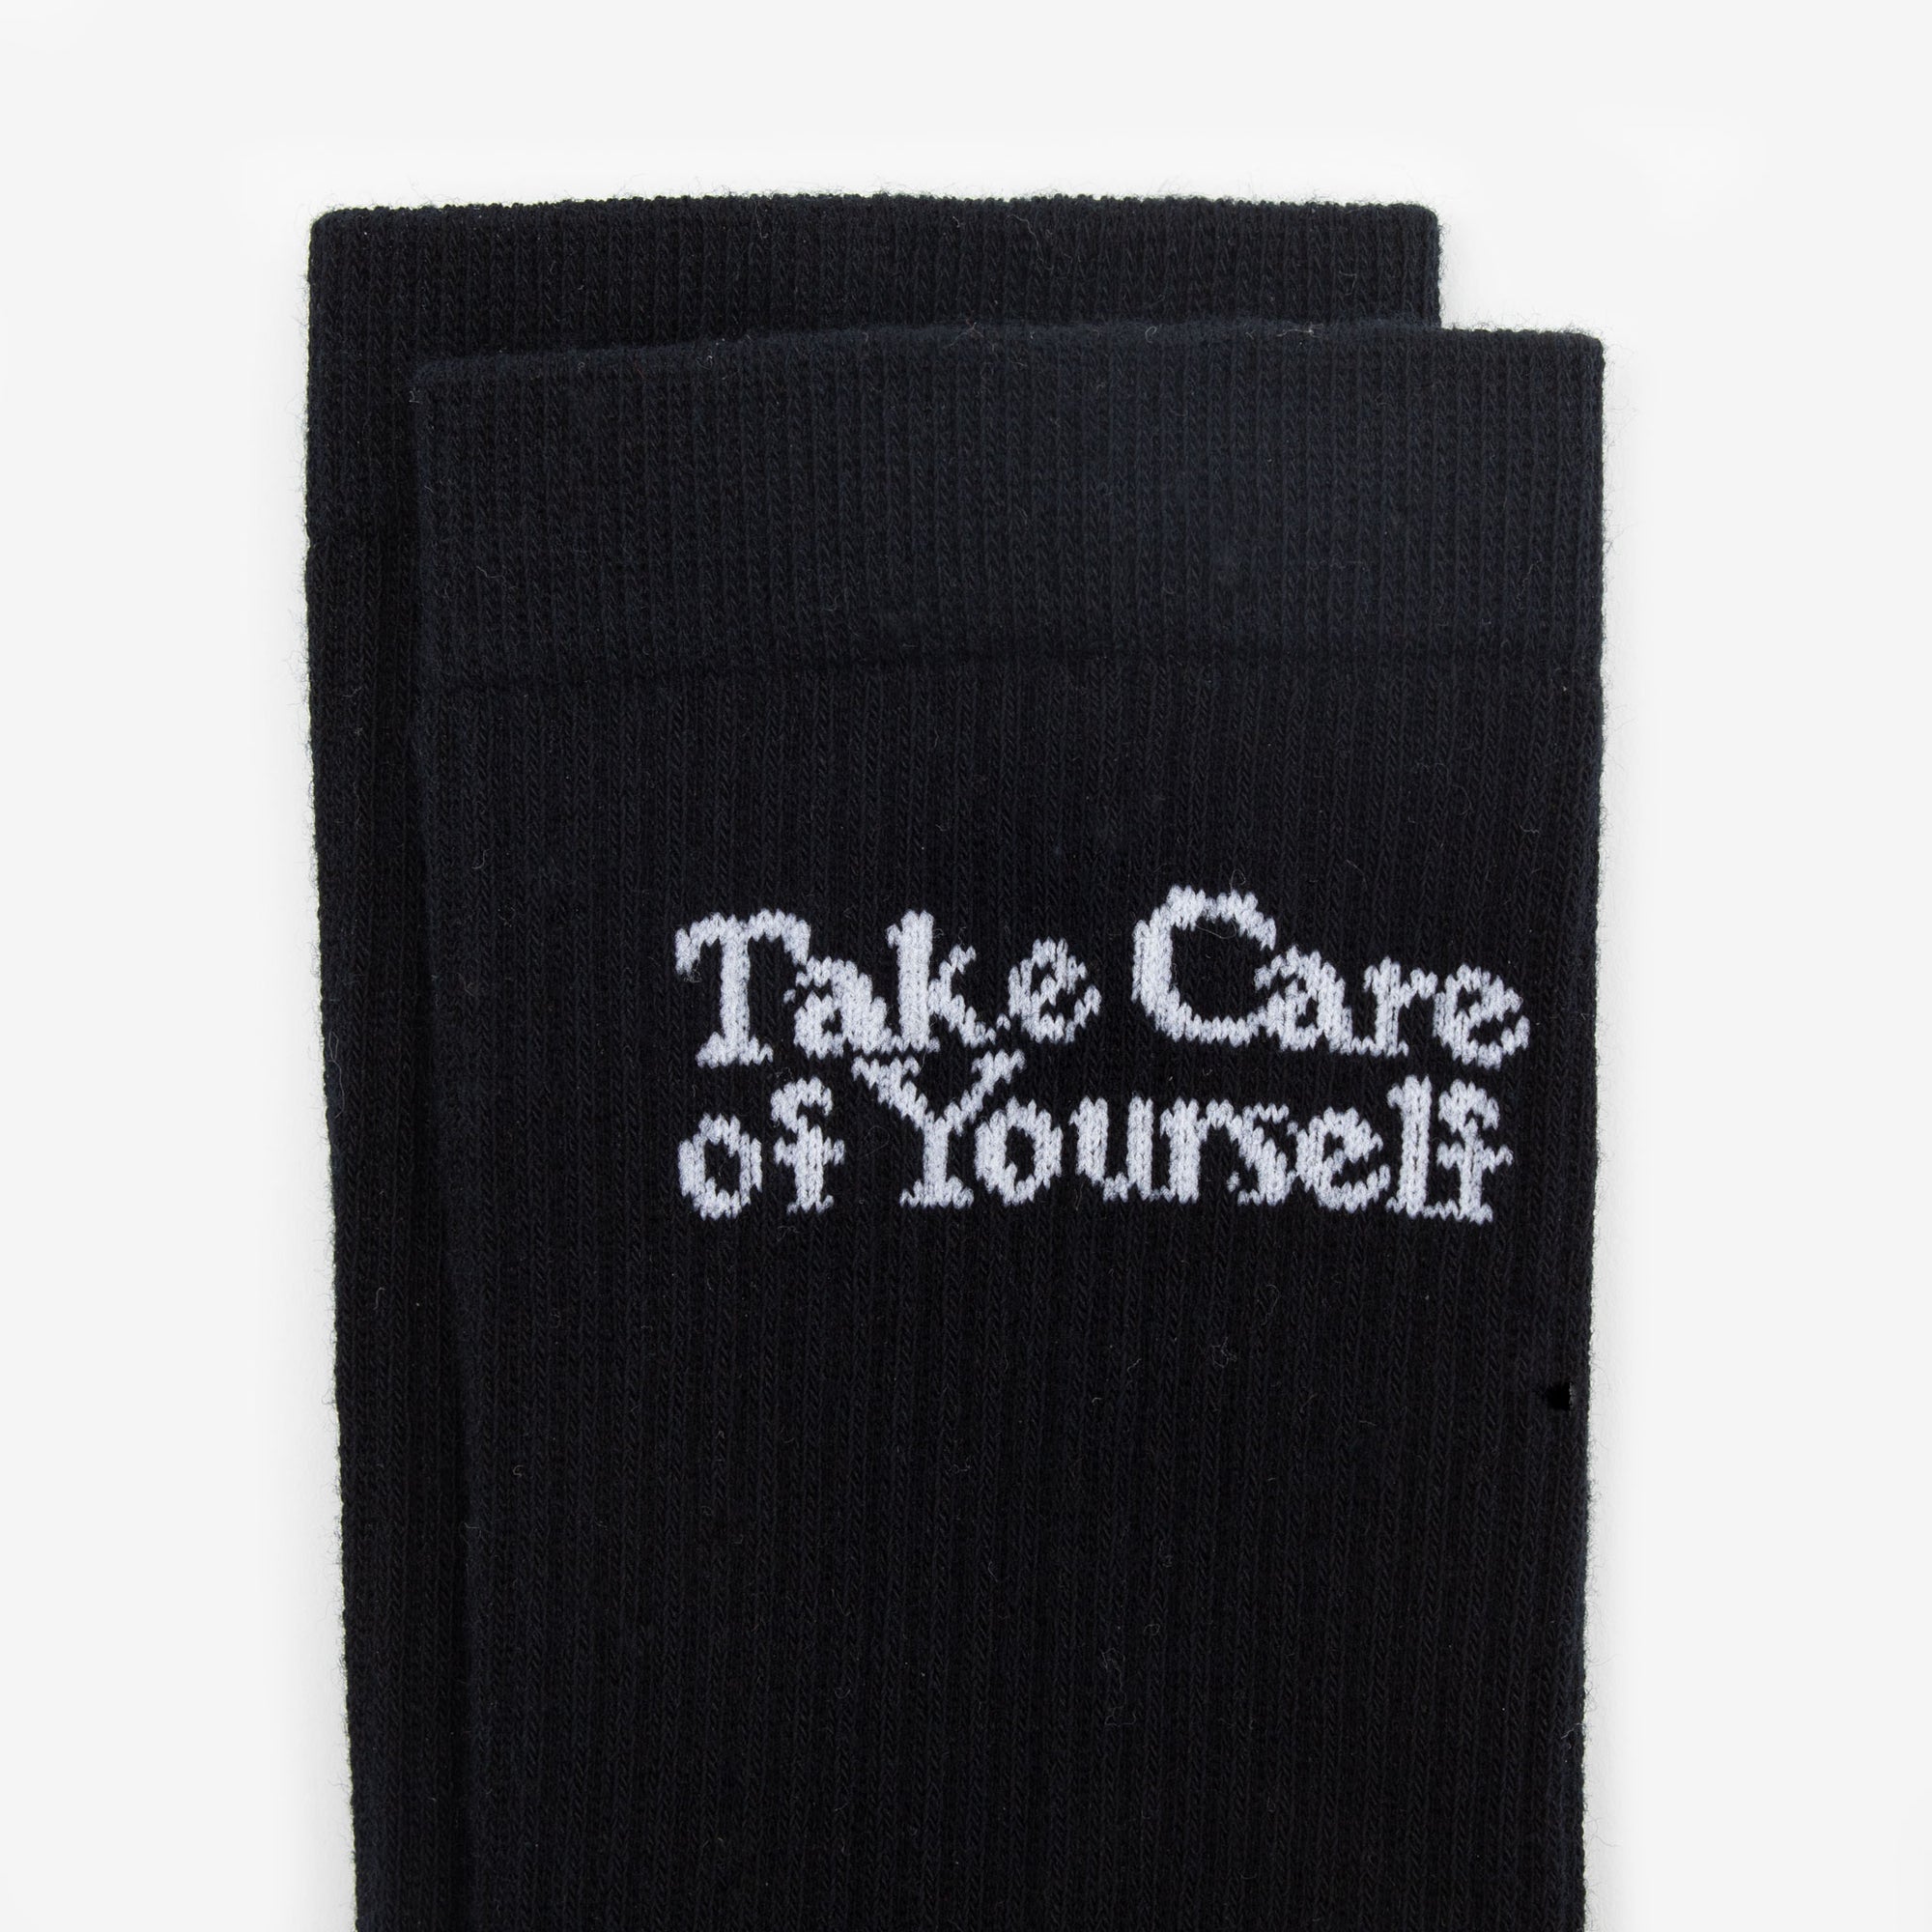 The Take Care Crew Sock in Black